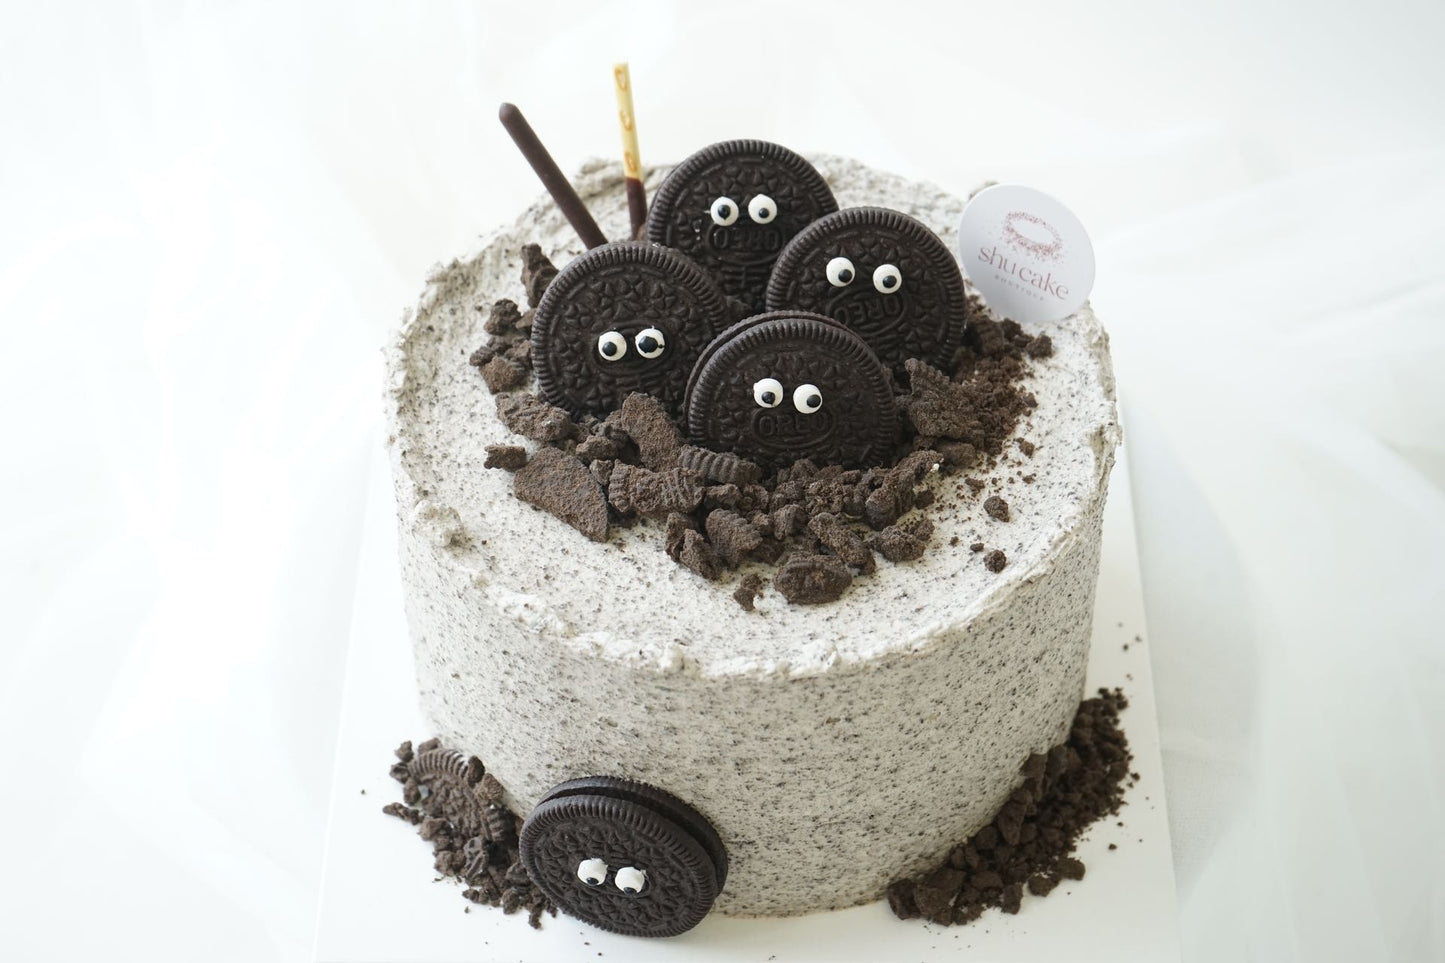 
                  
                    Oreo Monster Cake
                  
                